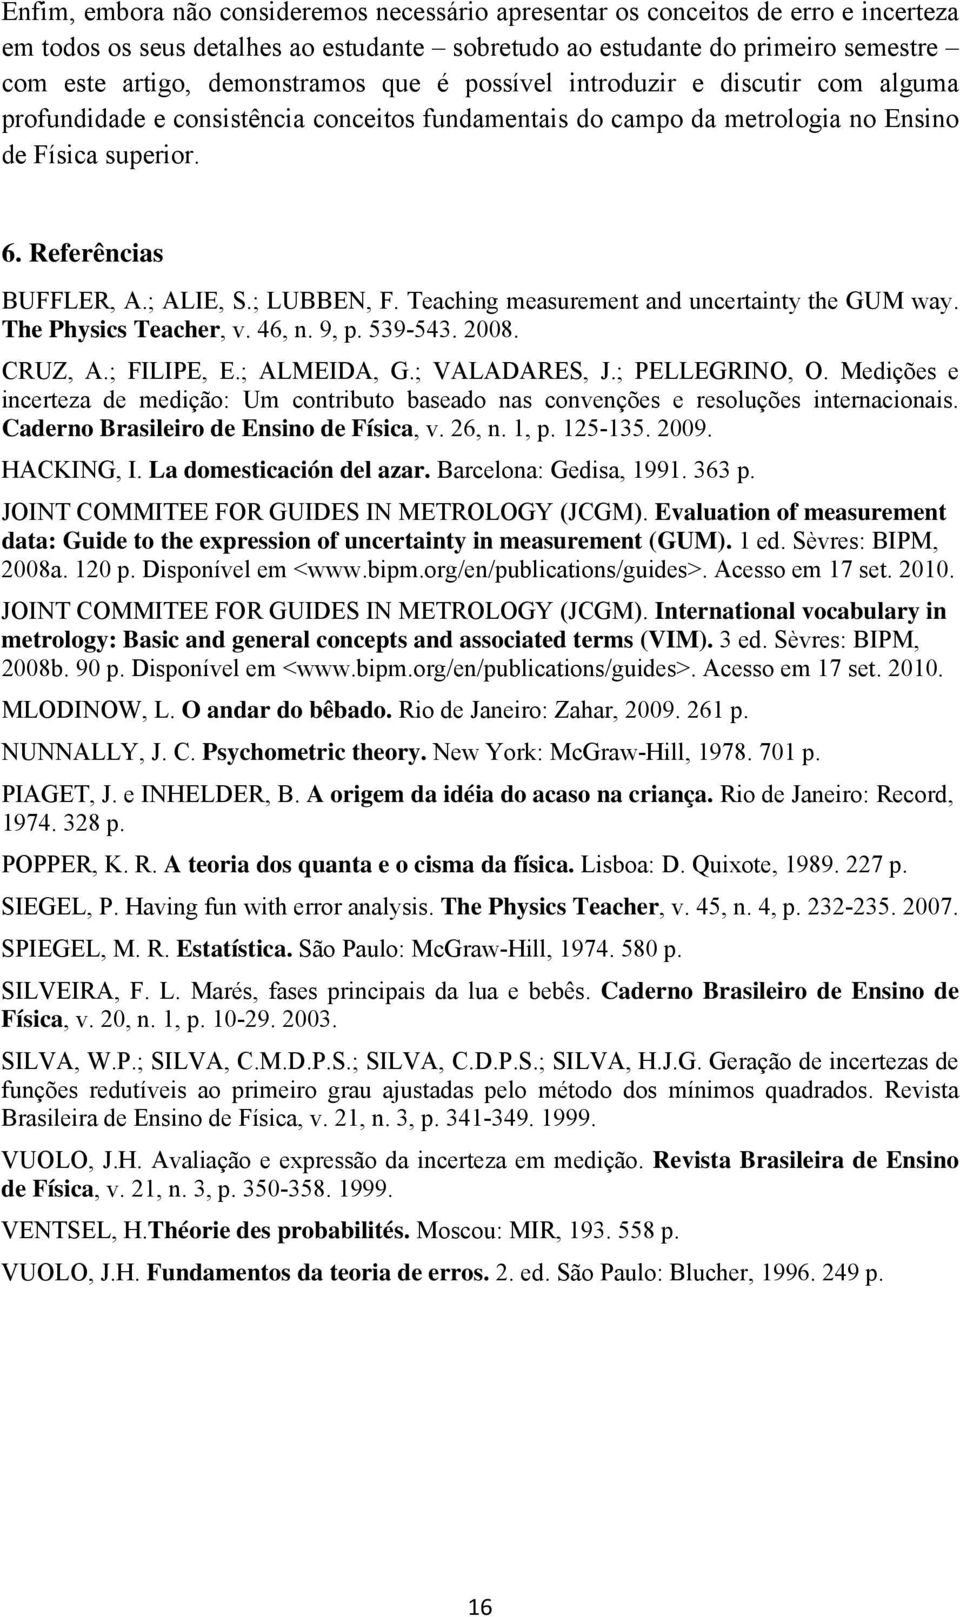 Teaching measurement and uncertainty the GUM way. The Physics Teacher, v. 46, n. 9, p. 539-543. 2008. CRUZ, A.; FILIPE, E.; ALMEIDA, G.; VALADARES, J.; PELLEGRINO, O.